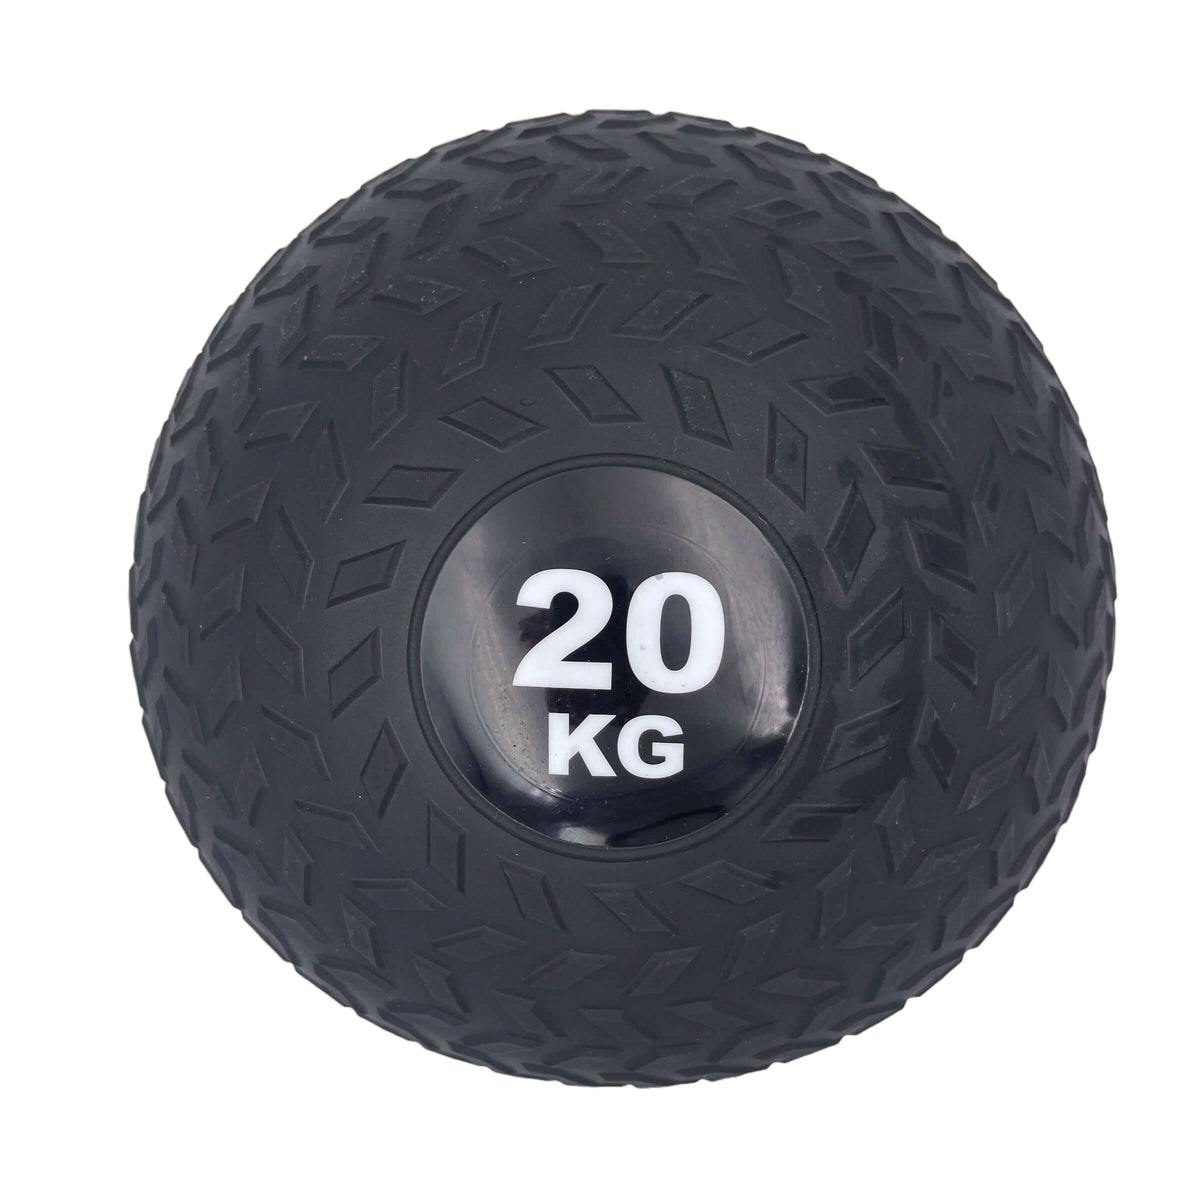 20kg Tyre Thread Slam Ball Fitness Exercise Sand Bag